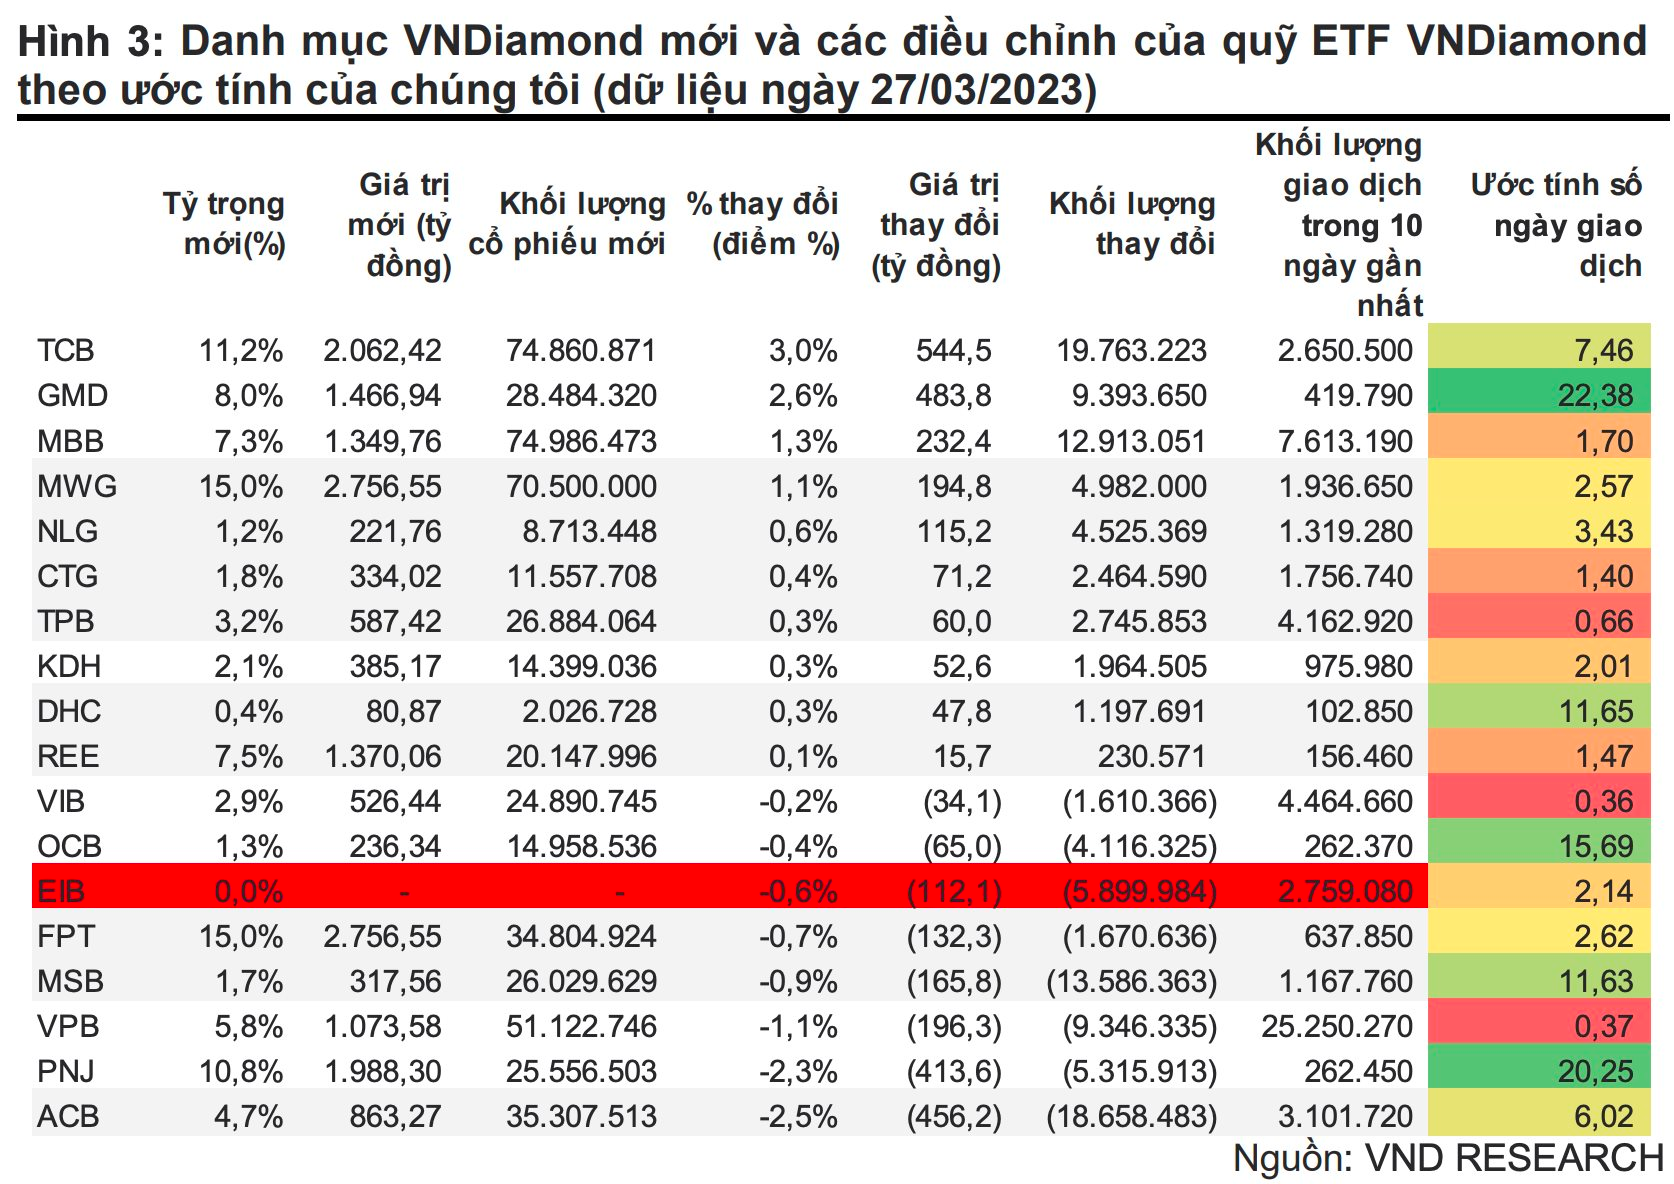 EIB có thể bị loại khỏi rổ VNDiamond, quỹ ETF quy mô 18.400 tỷ đồng sẽ mua bán thế nào trong kỳ tái cơ cấu quý 2?